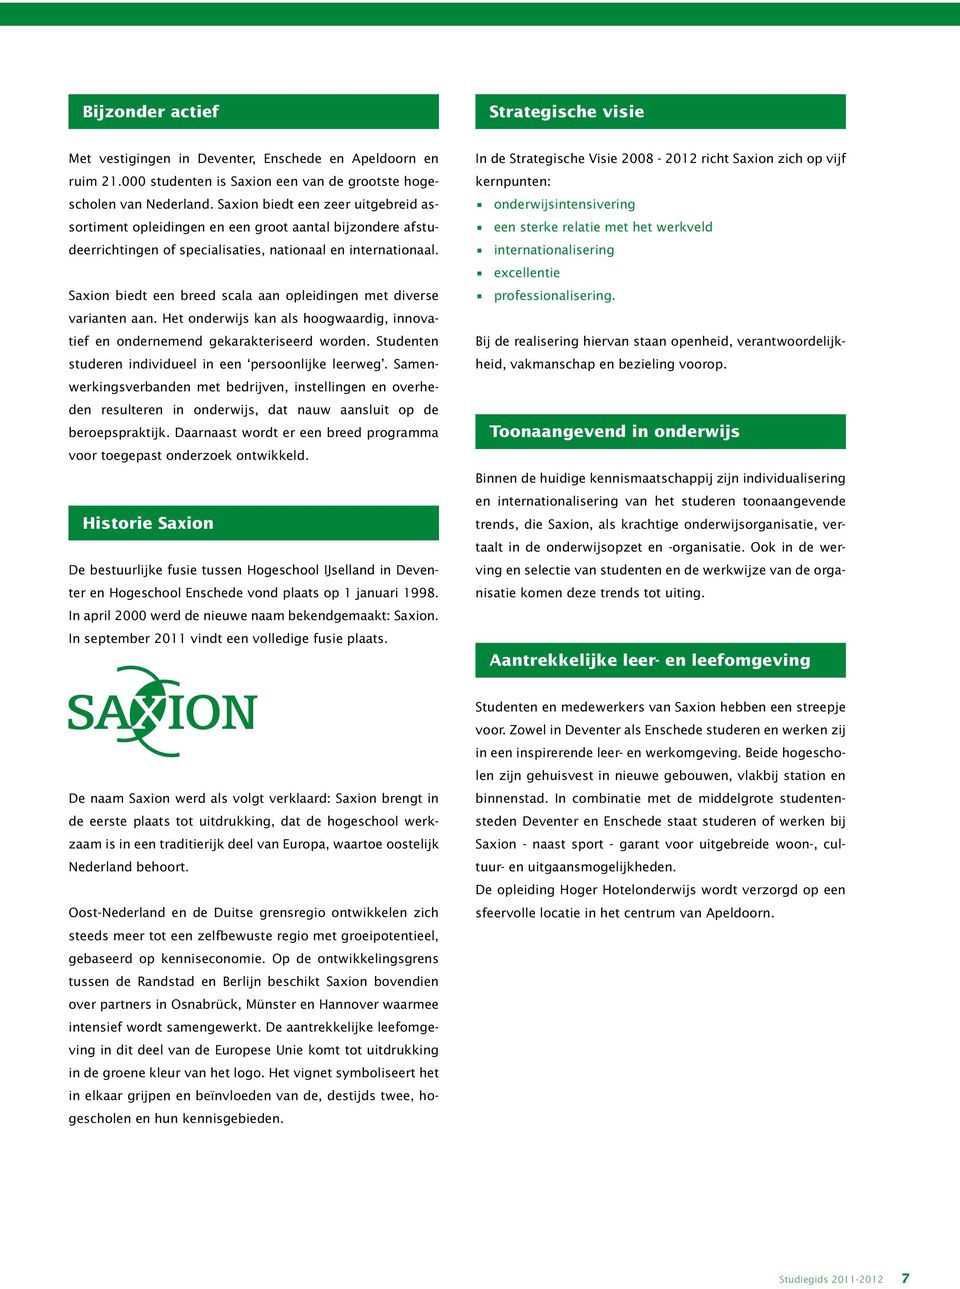 Saxion biedt een breed scala aan opleidingen met diverse varianten aan. Het onderwijs kan als hoogwaardig, innovatief en ondernemend gekarakteriseerd worden.